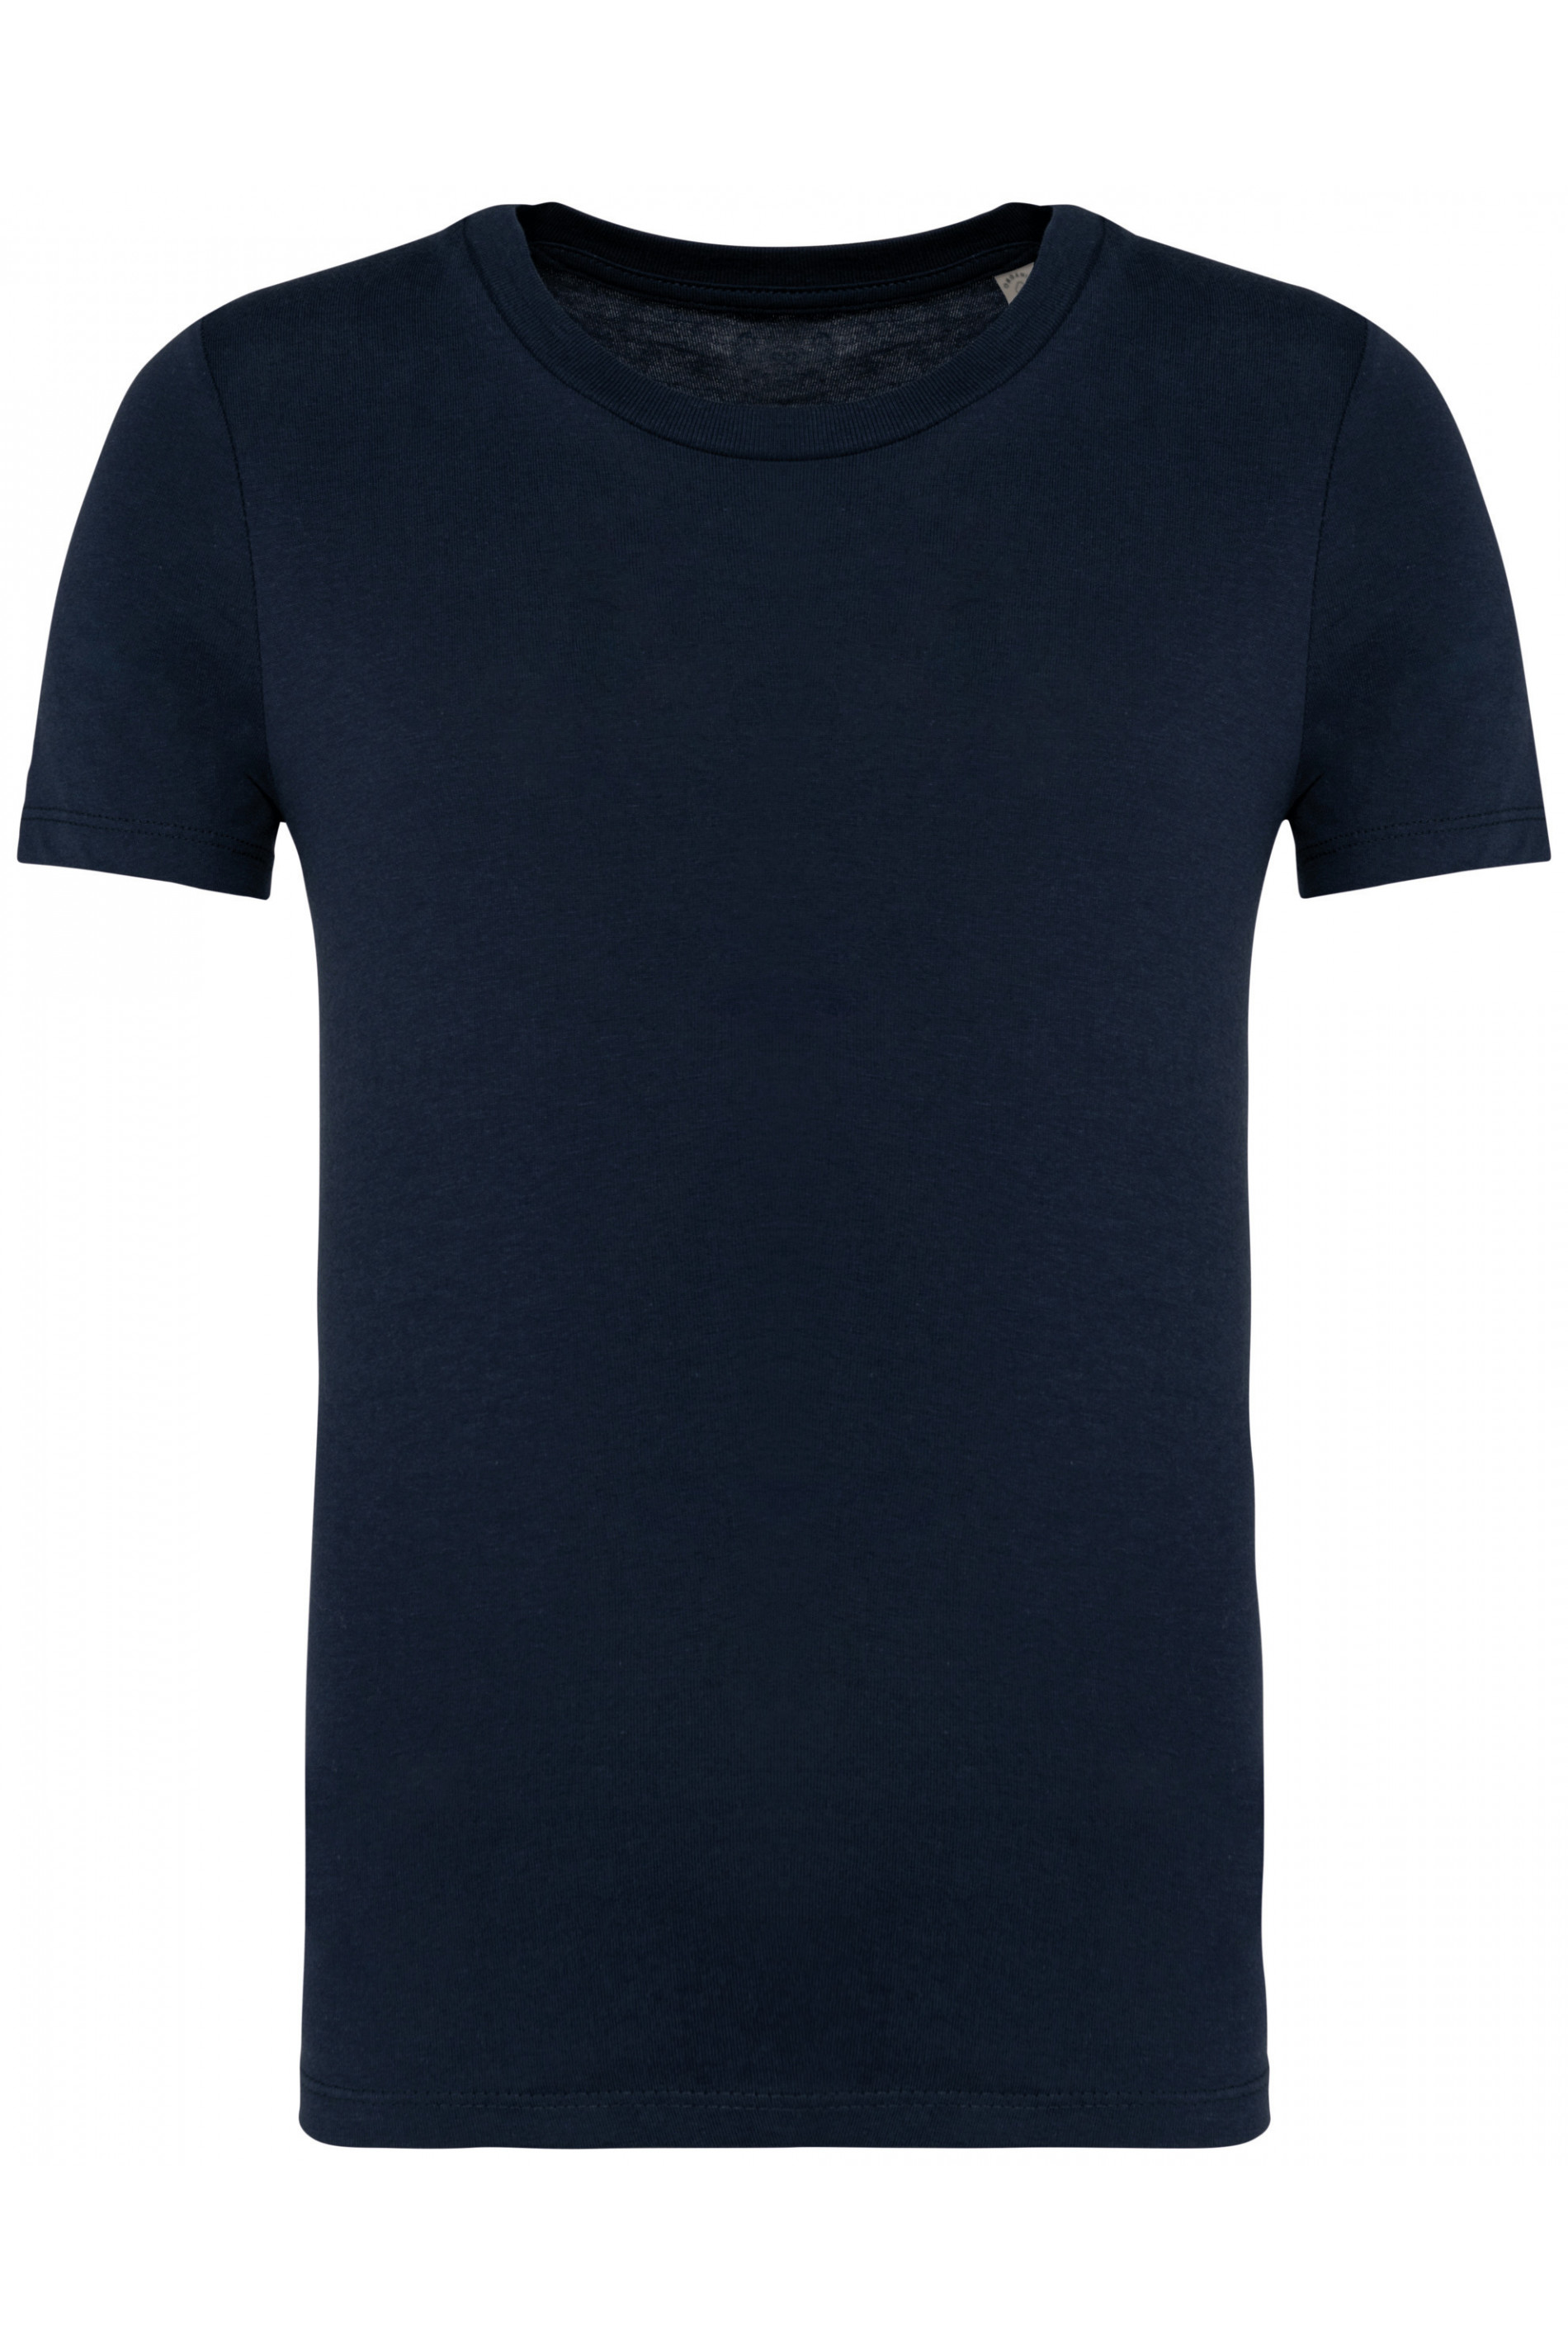 Bio-Baumwoll-Kinder T-Shirt 155 g/m² Native Spirit® Navy Blue 2/4 Jahre